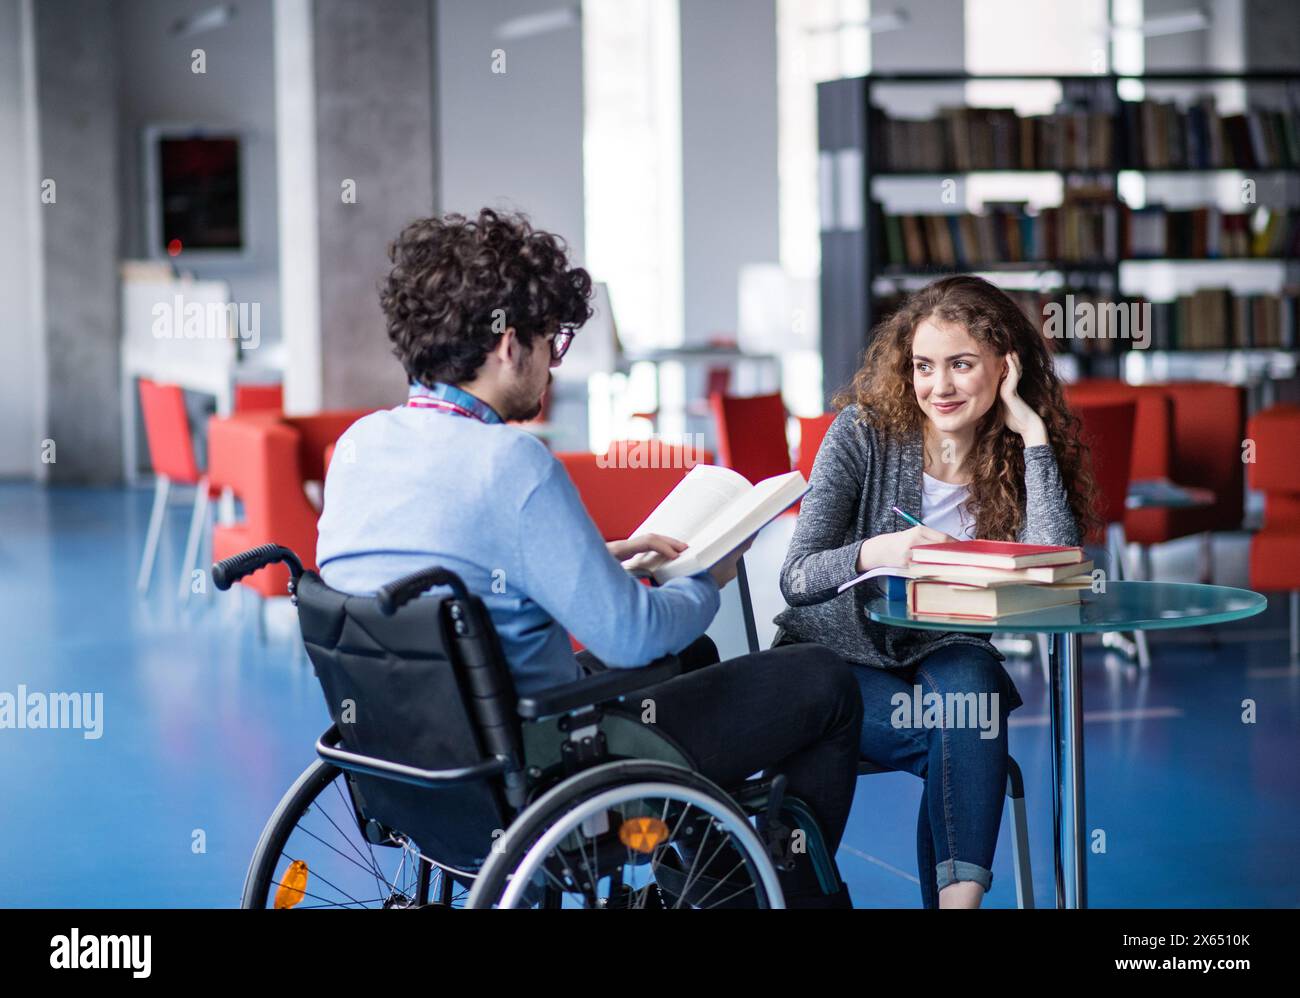 Gutaussehender Student im Rollstuhl, Studium in der Bibliothek mit Klassenkameraden, Vorbereitung auf die Abschlussprüfung, Präsentation. Studiengruppe. Teamfähigkeit. Stockfoto